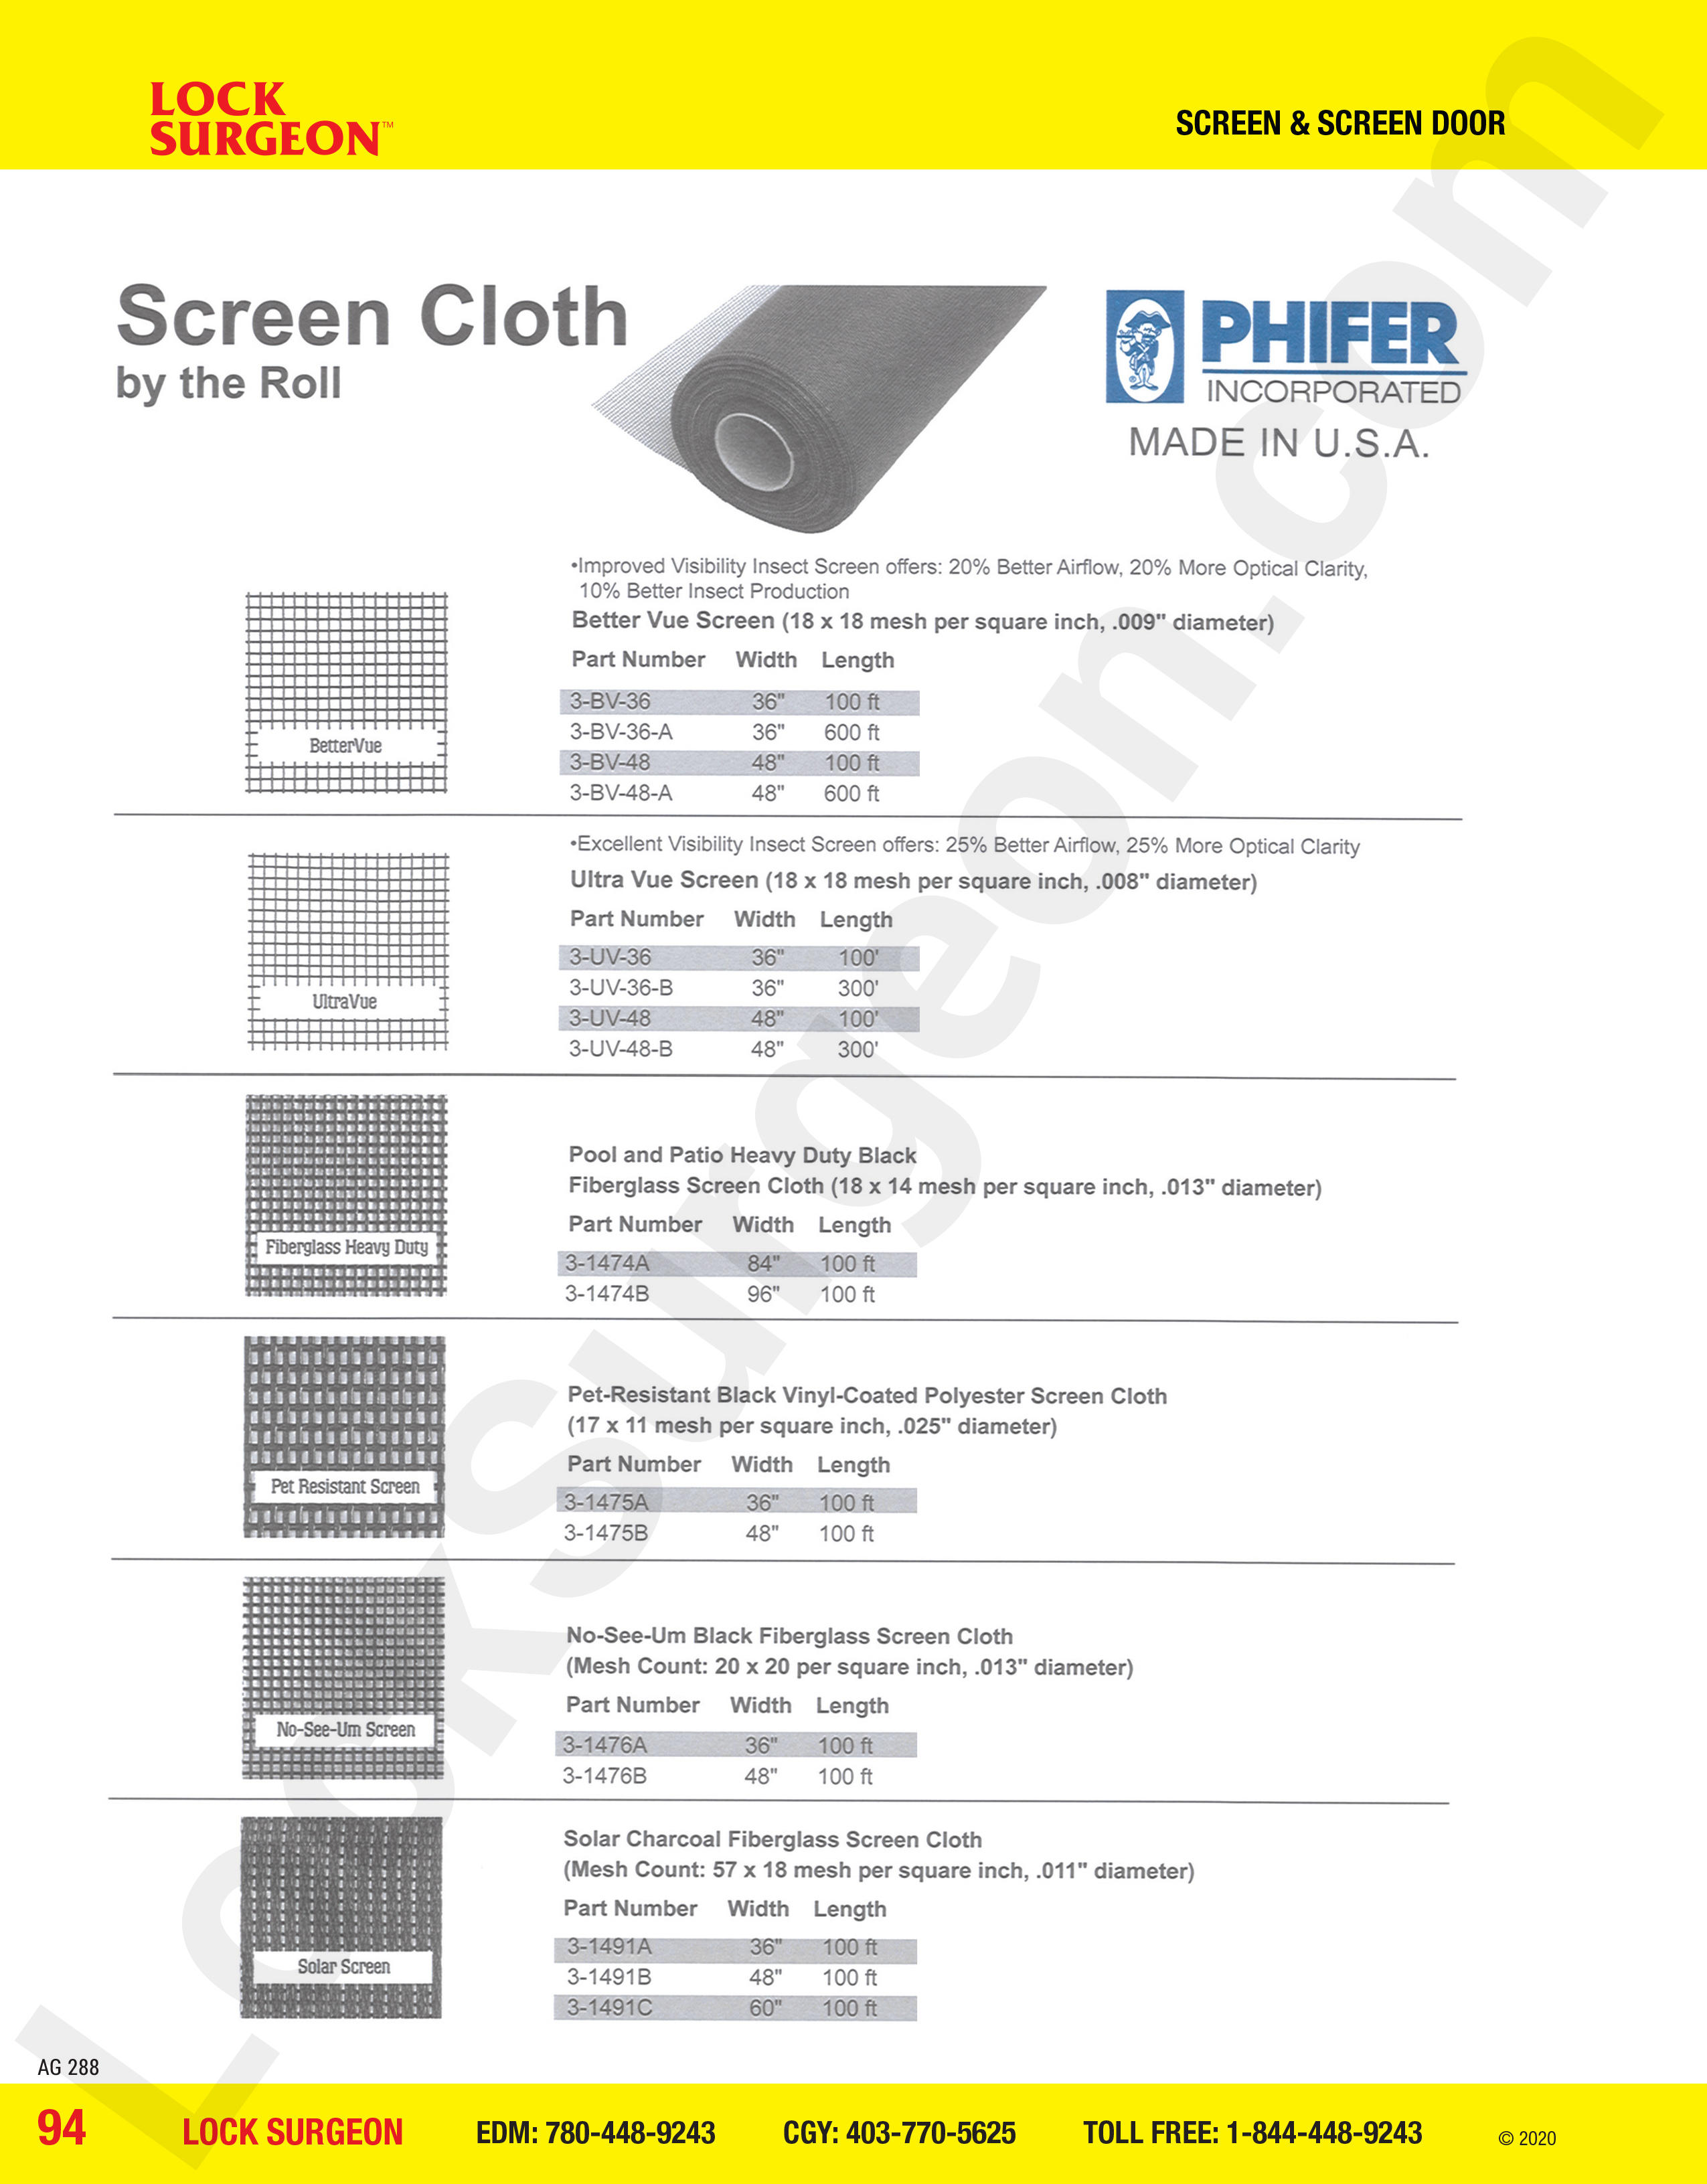 Screen and Screen Door phifer screen cloth rolls